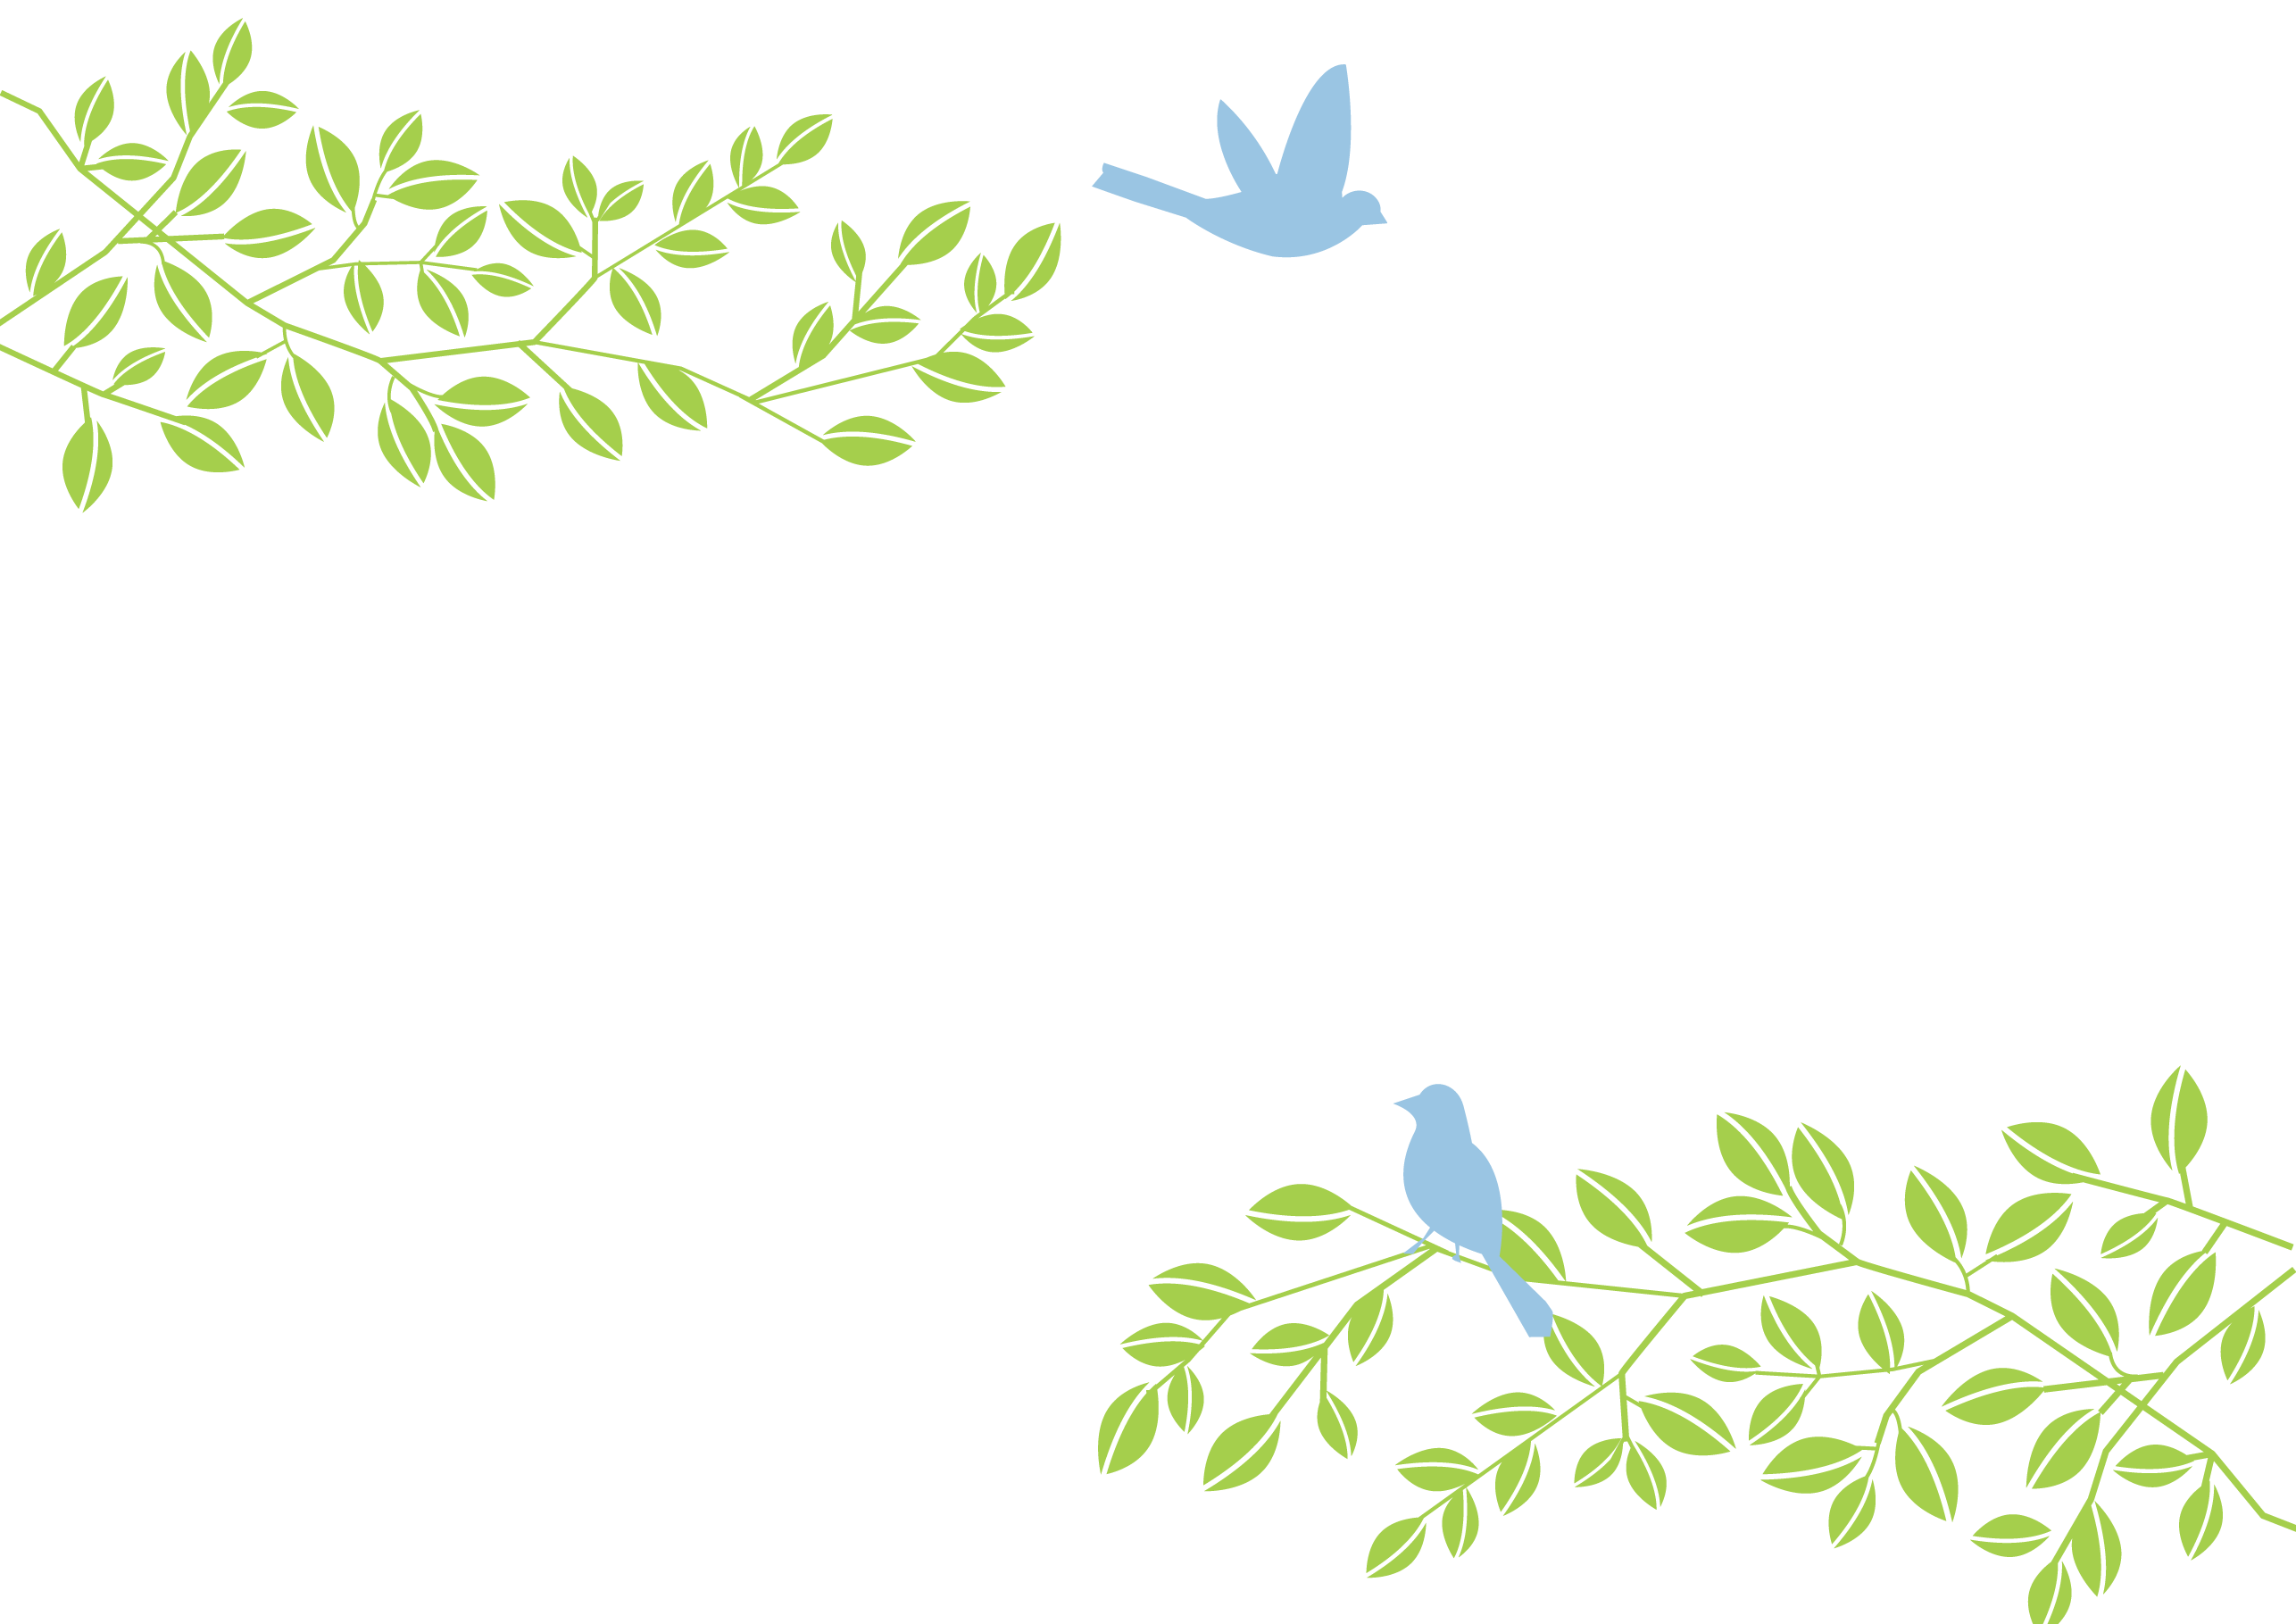 鳥と葉っぱのシンプルなパワーポイントの無料テンプレートをダウンロード 無料ダウンロード テンプレルン